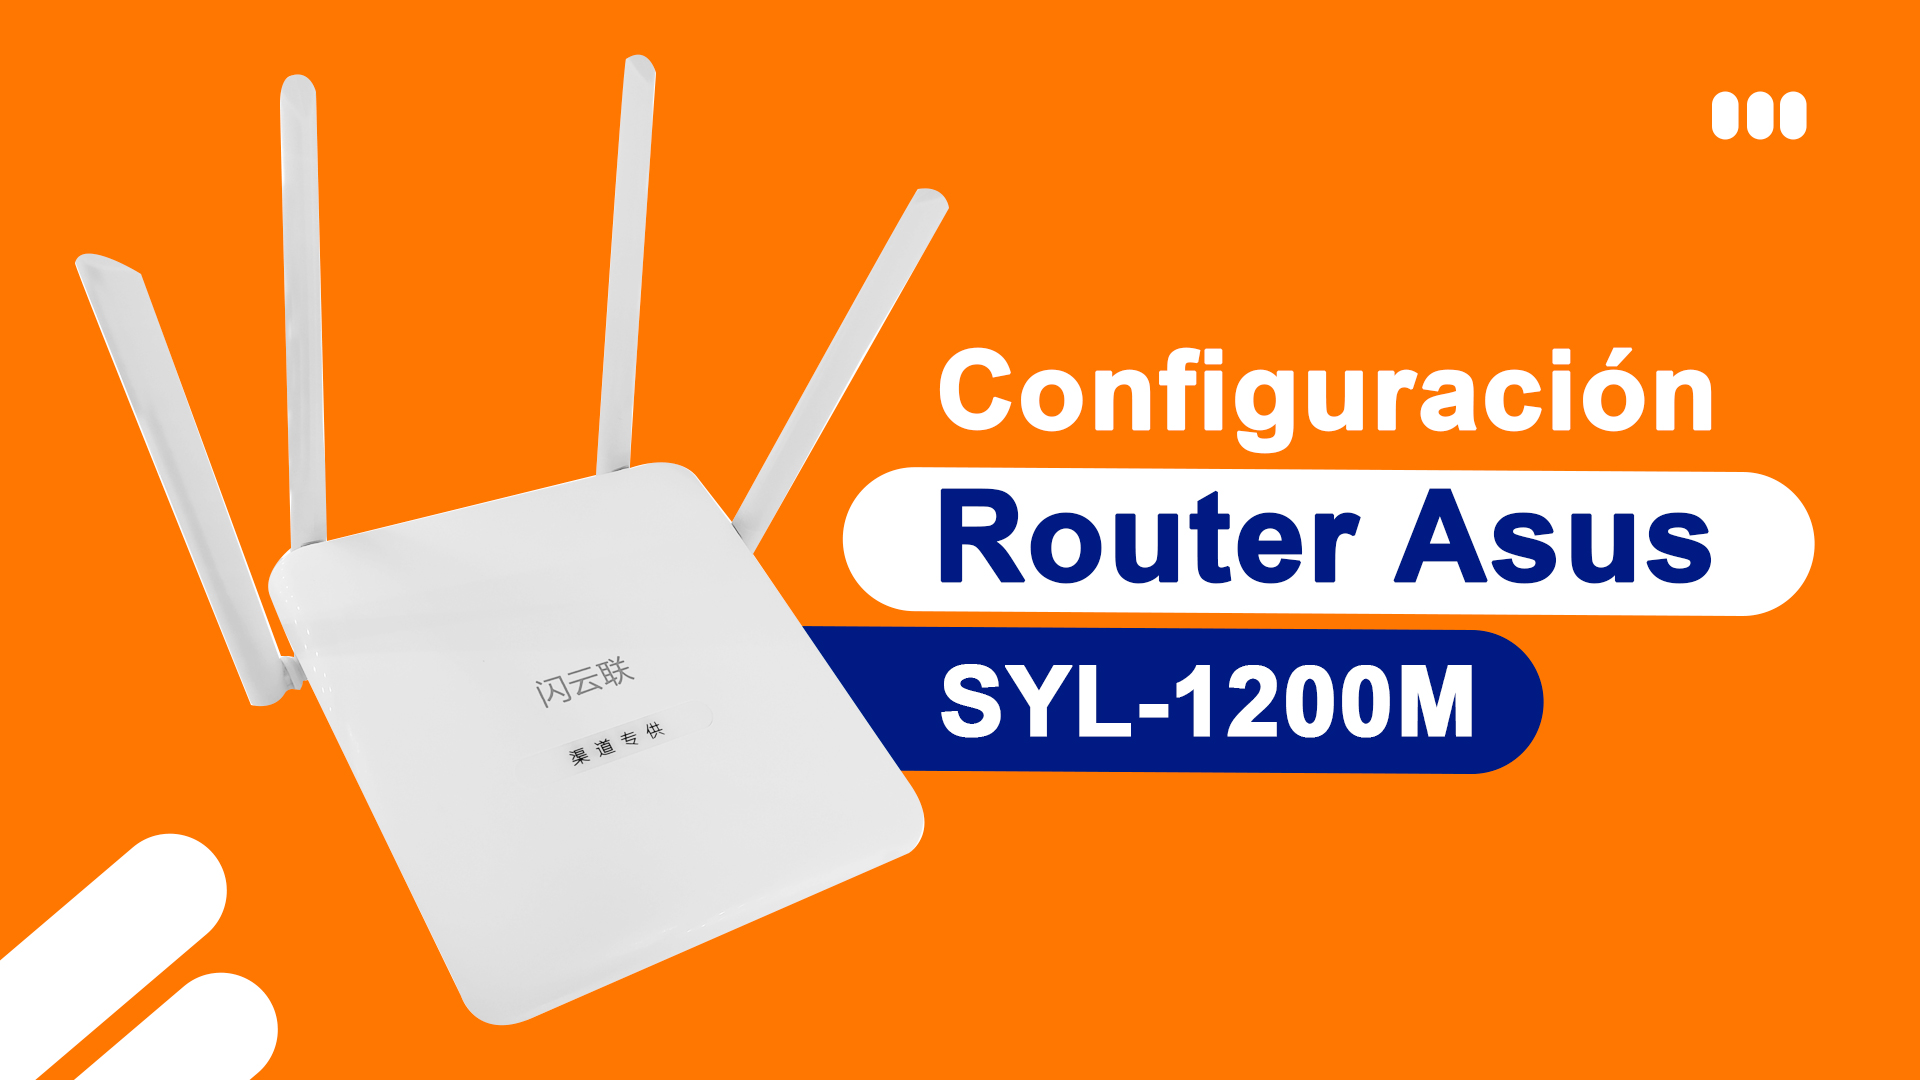 Configuracion de Router SYL-1200M #ASUS Idioma ingles